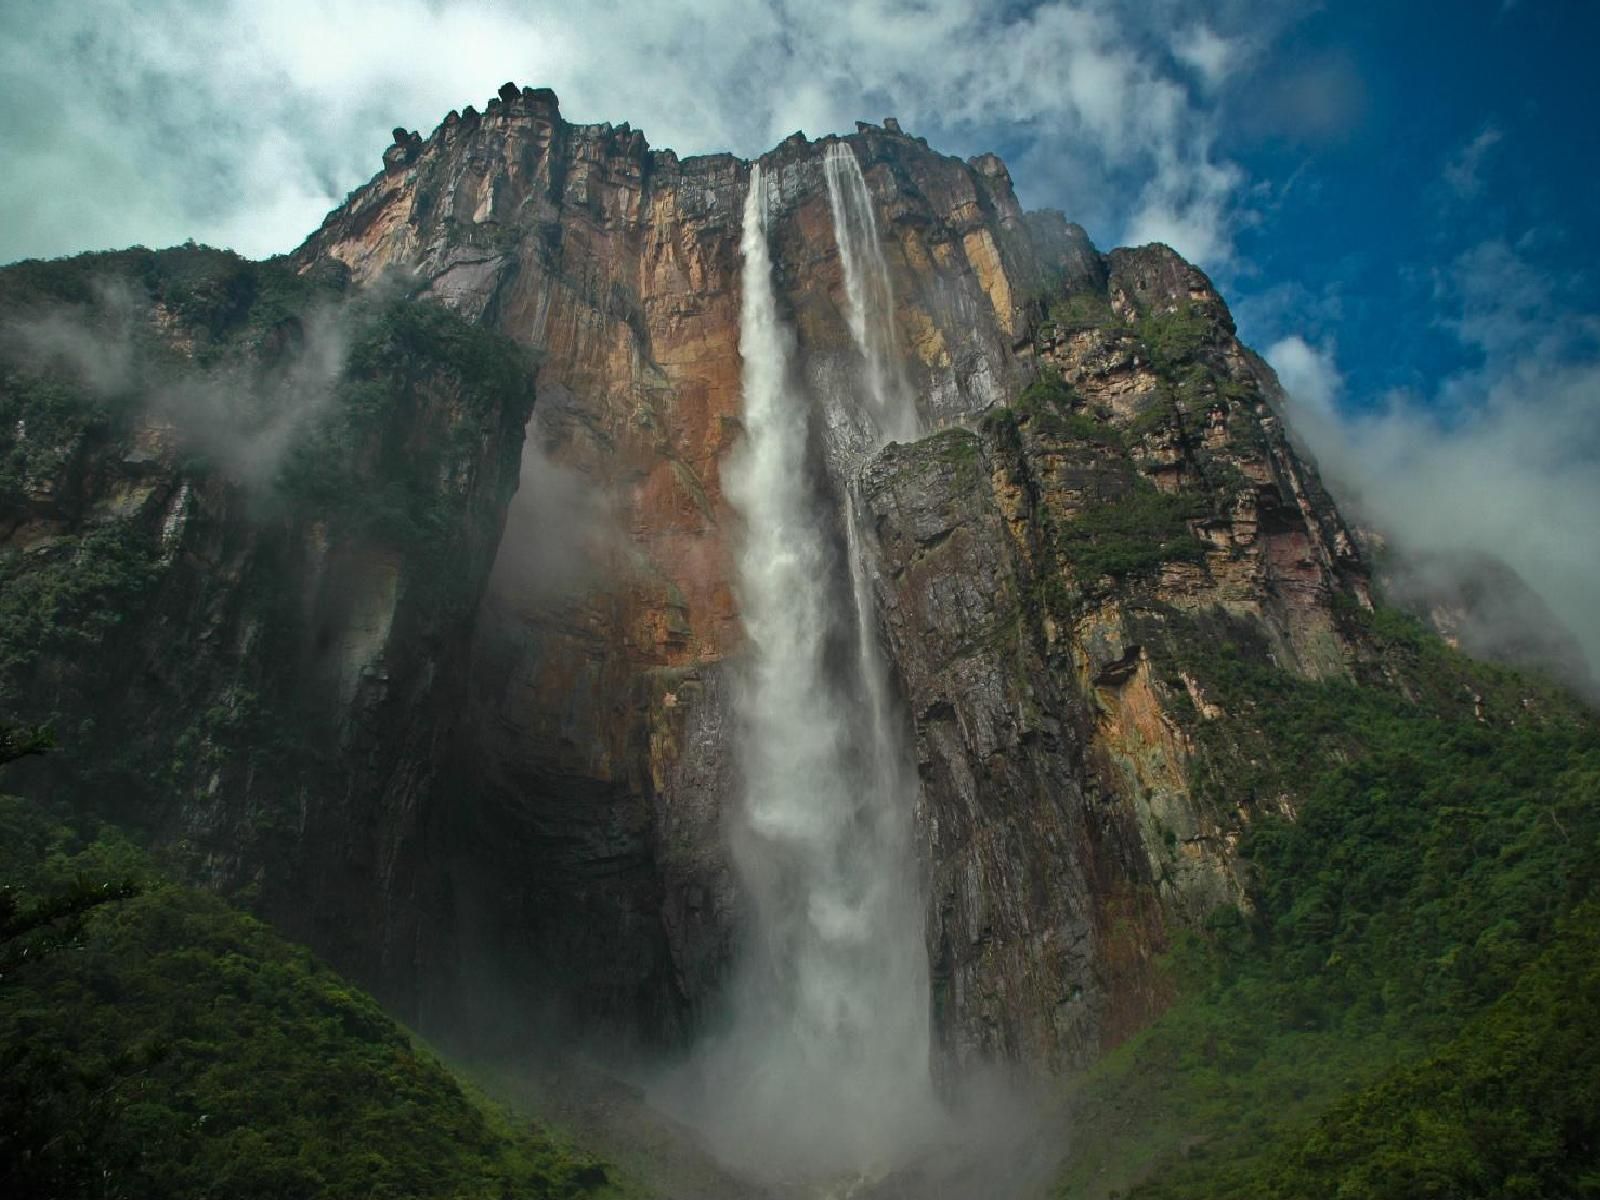 Desktop wallpaper of a breathtaking waterfall.